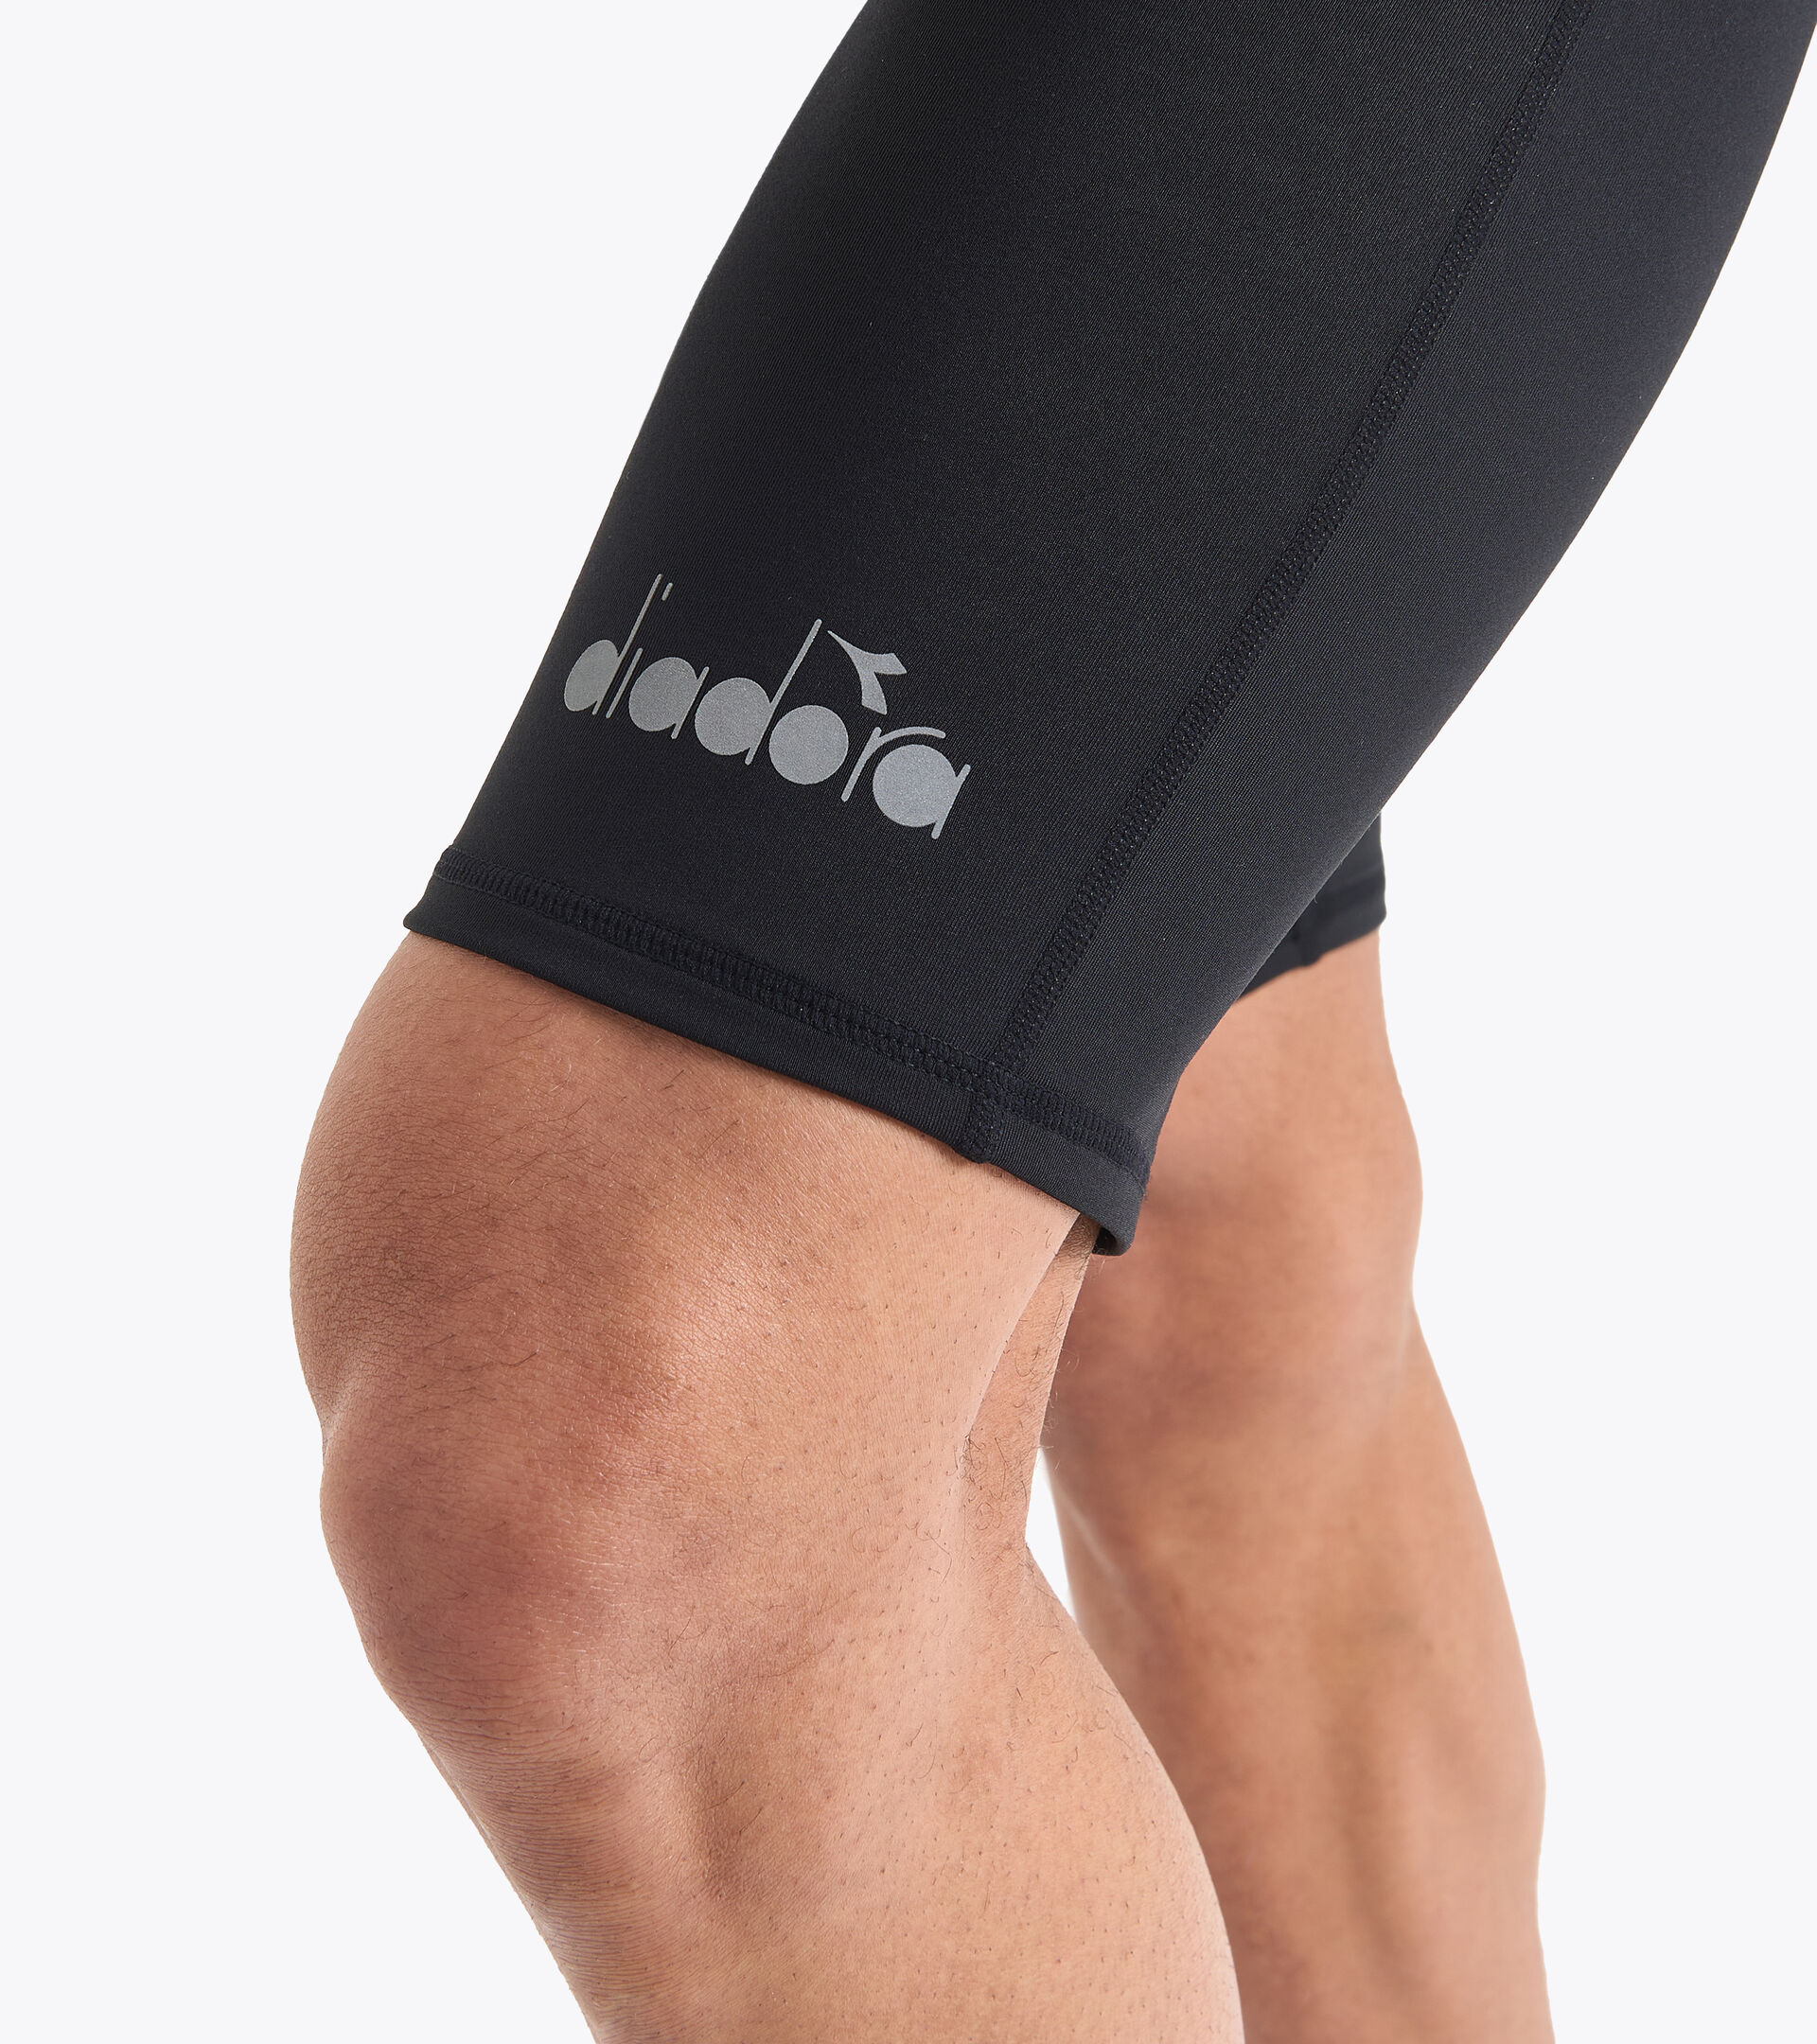 SHORT TIGHTS Running shorts - Men - Diadora Online Store FI